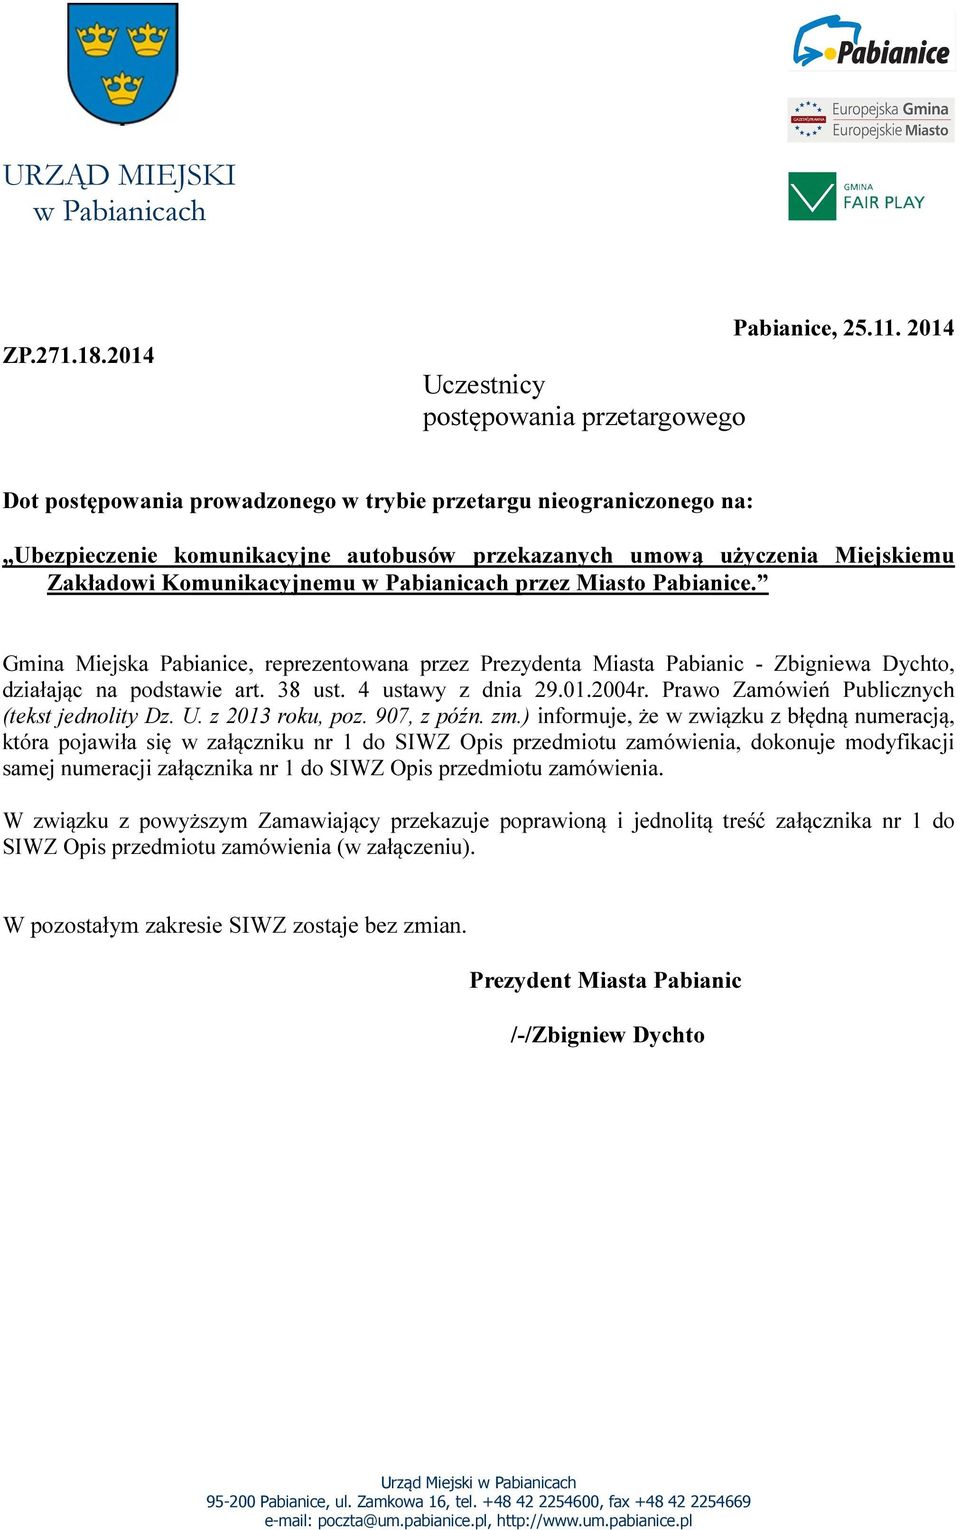 Miasto Pabianice. Gmina Miejska Pabianice, reprezentowana przez Prezydenta Miasta Pabianic - Zbigniewa Dychto, działając na podstawie art. 38 ust. 4 ustawy z dnia 29.01.2004r.